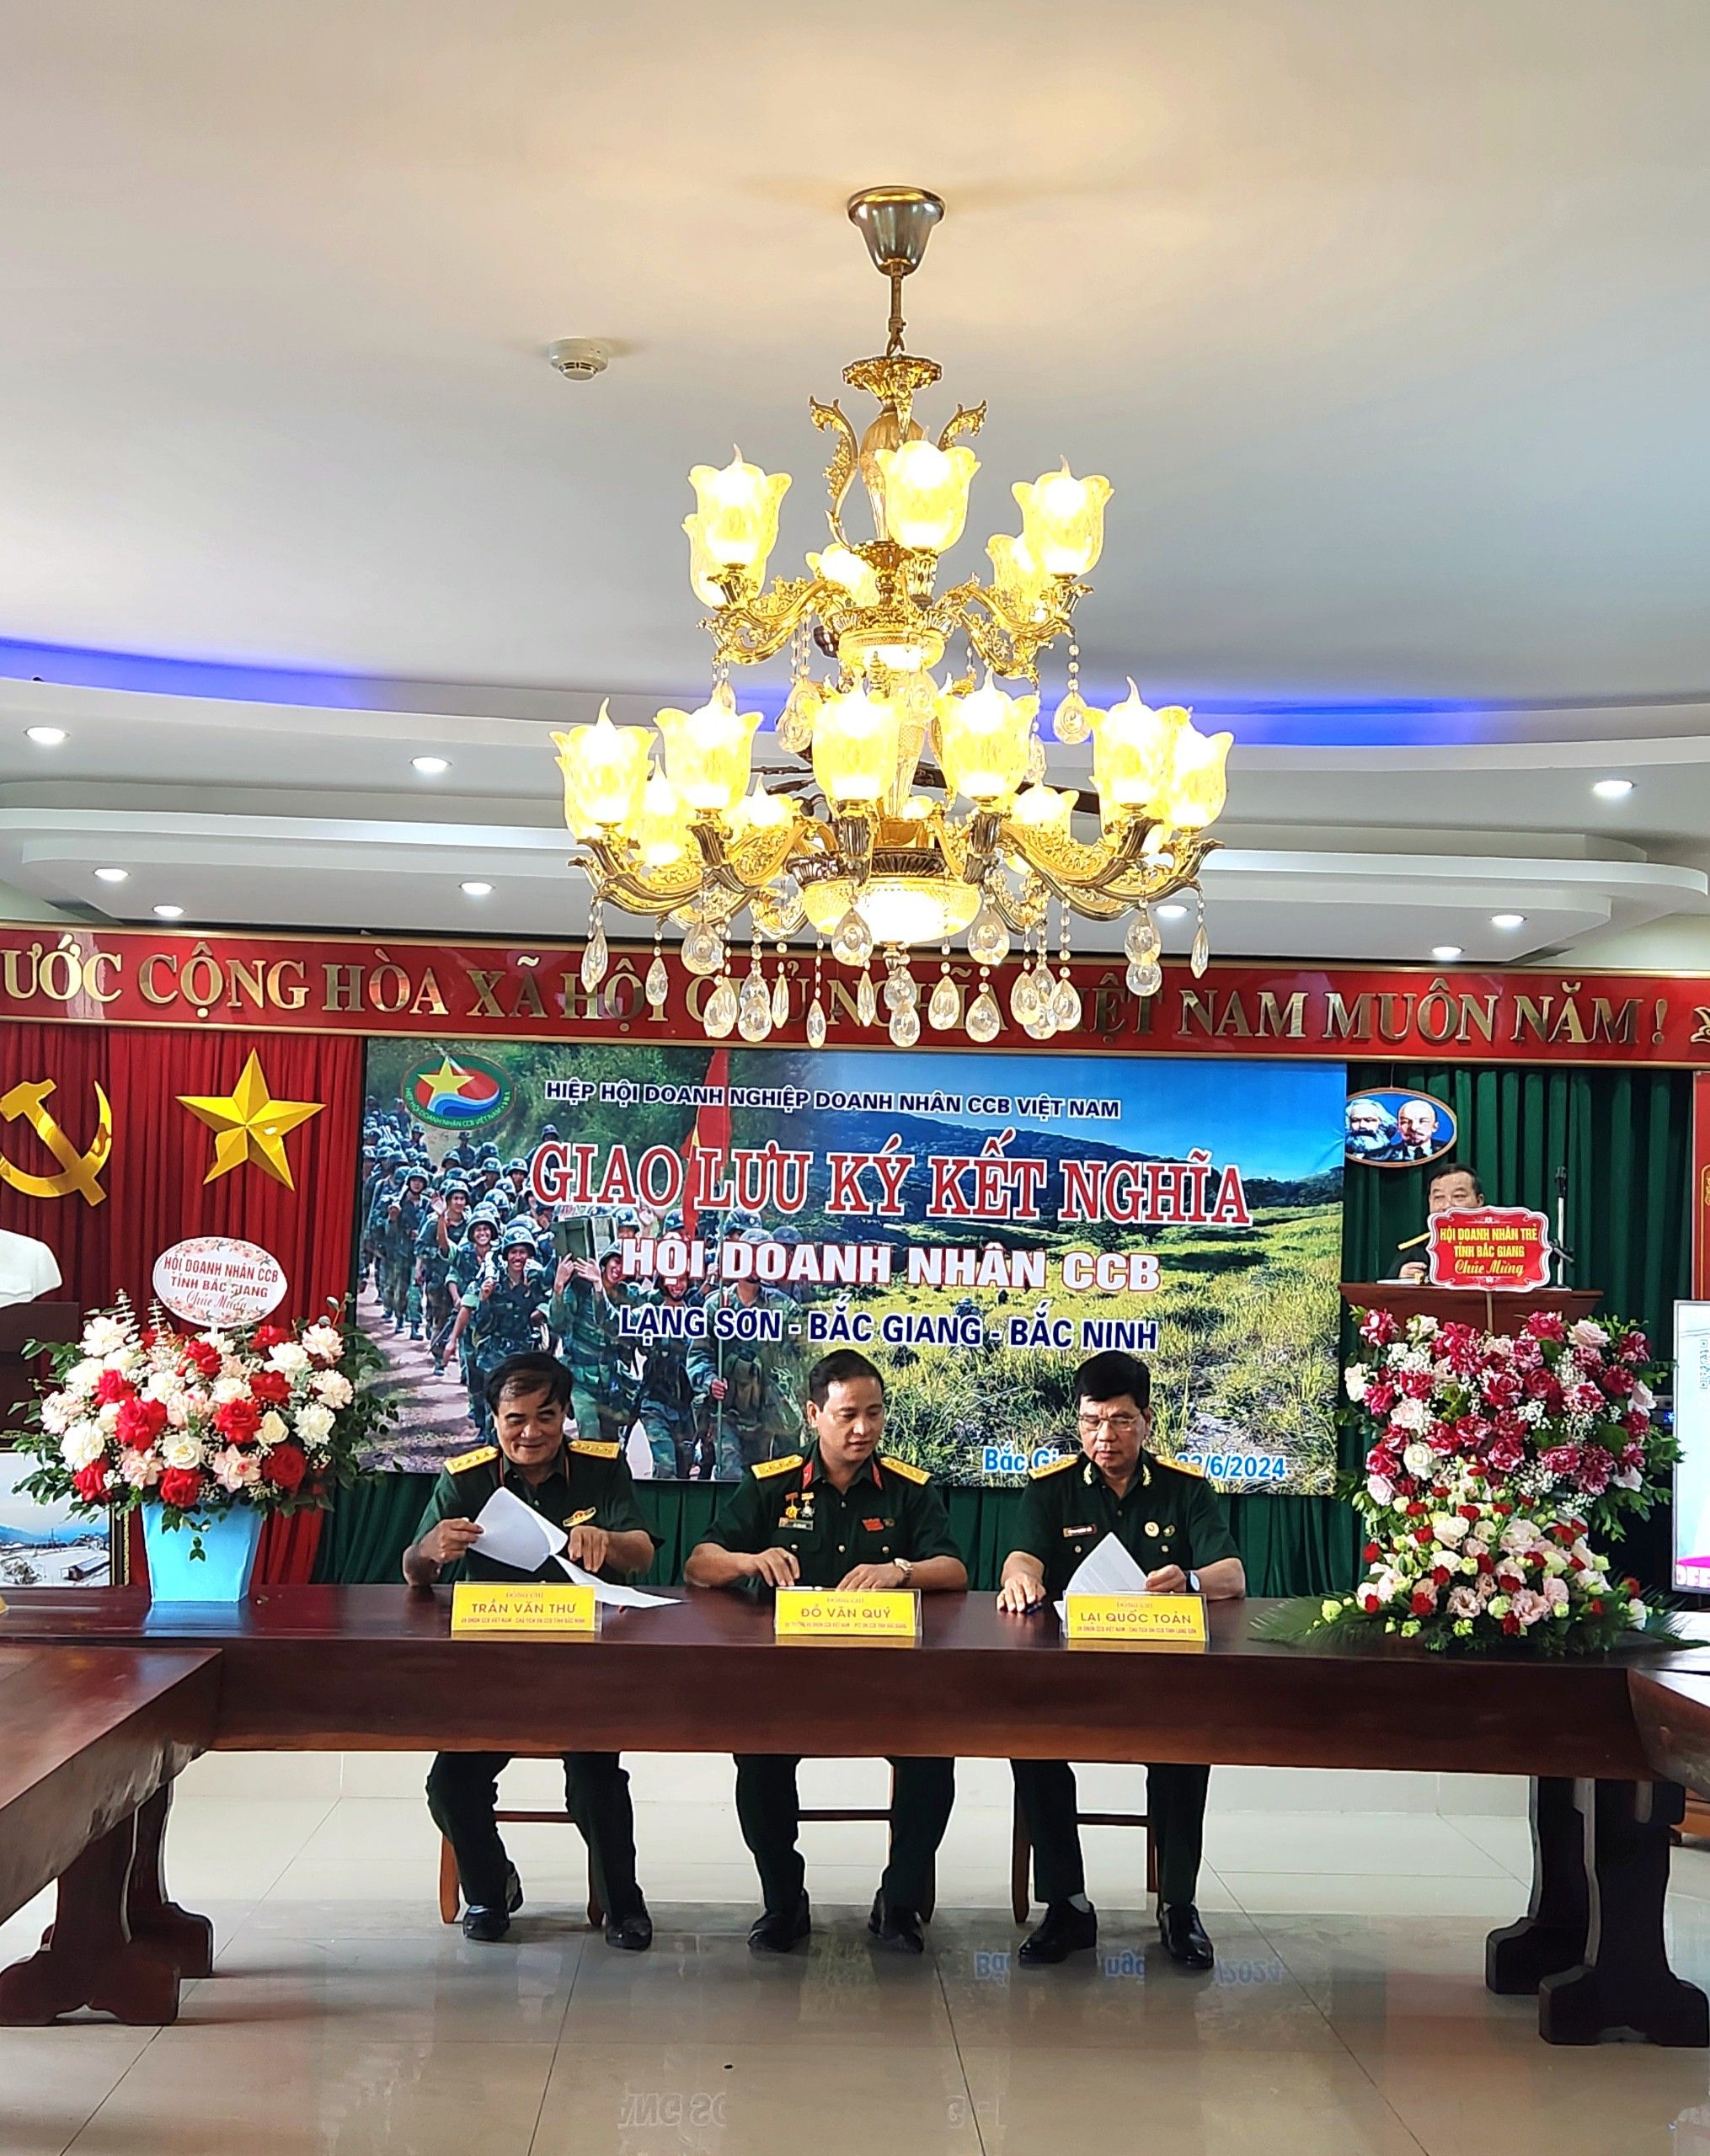 Giao lưu ký kết nghĩa Doanh nhân CCB Ba tỉnh Lạng Sơn - Bắc Giang - Bắc Ninh